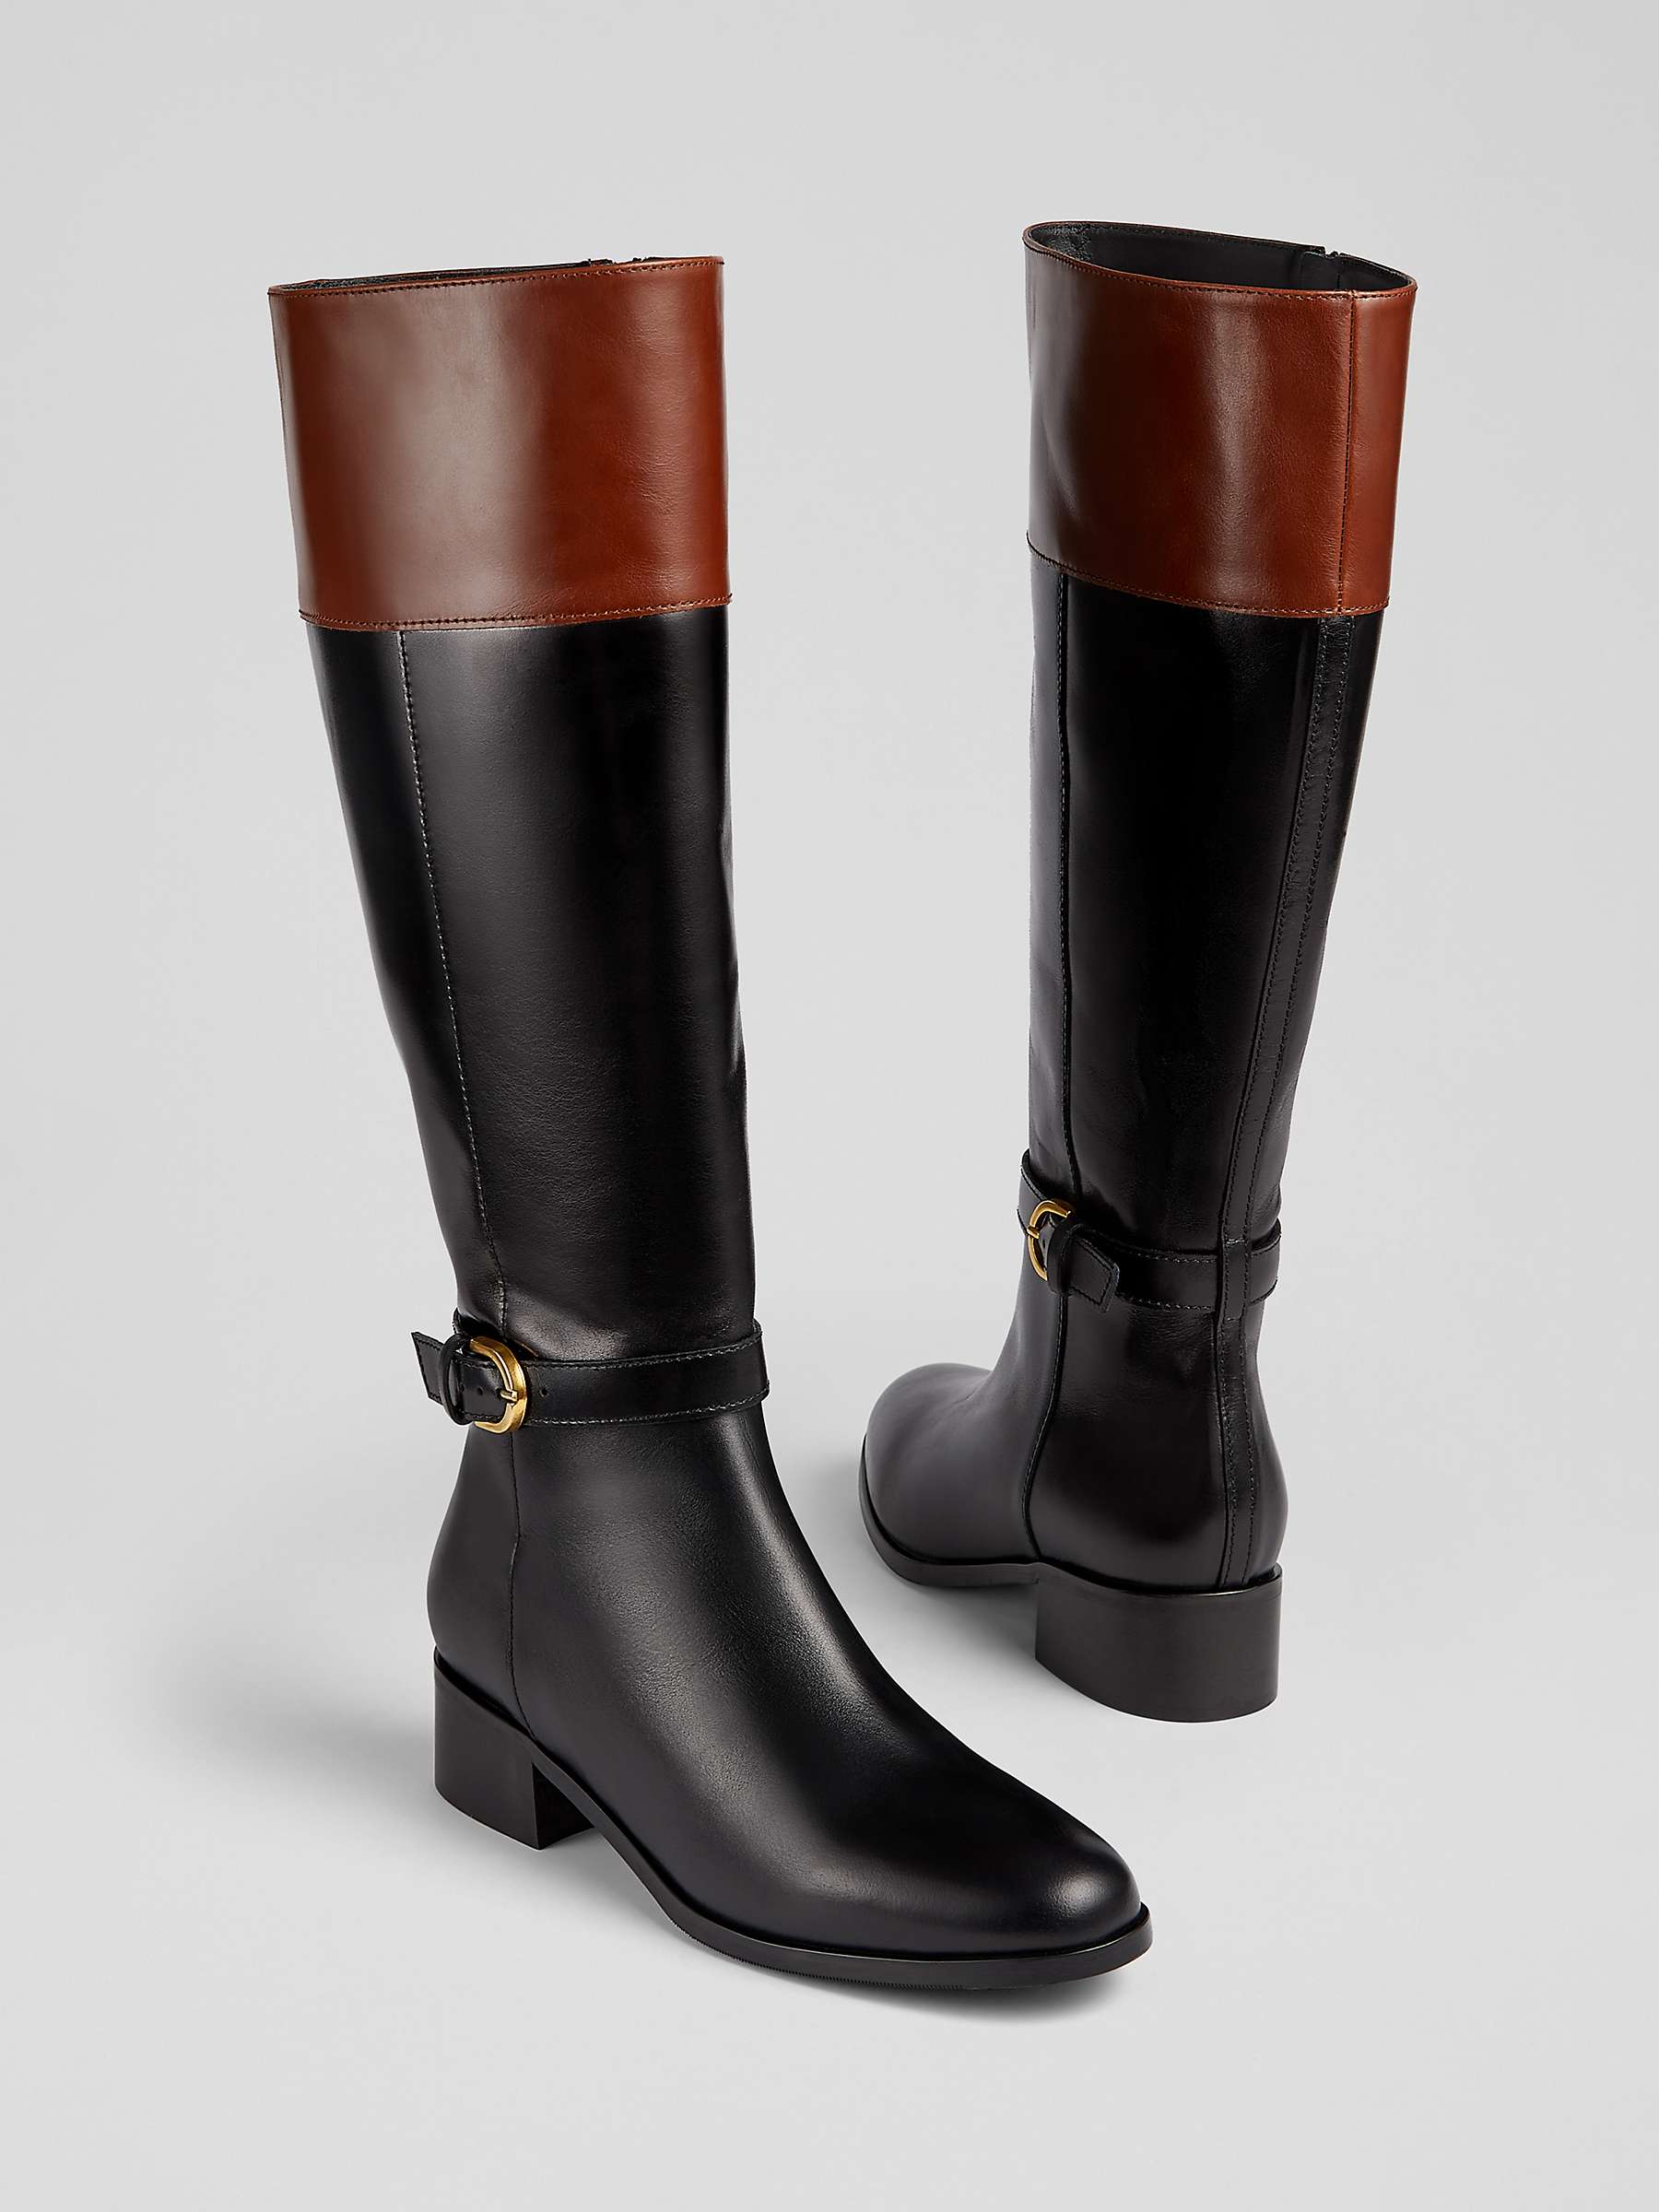 L.K.Bennett x Ascot Collection: Bennett Leather Knee High Boots, Black ...